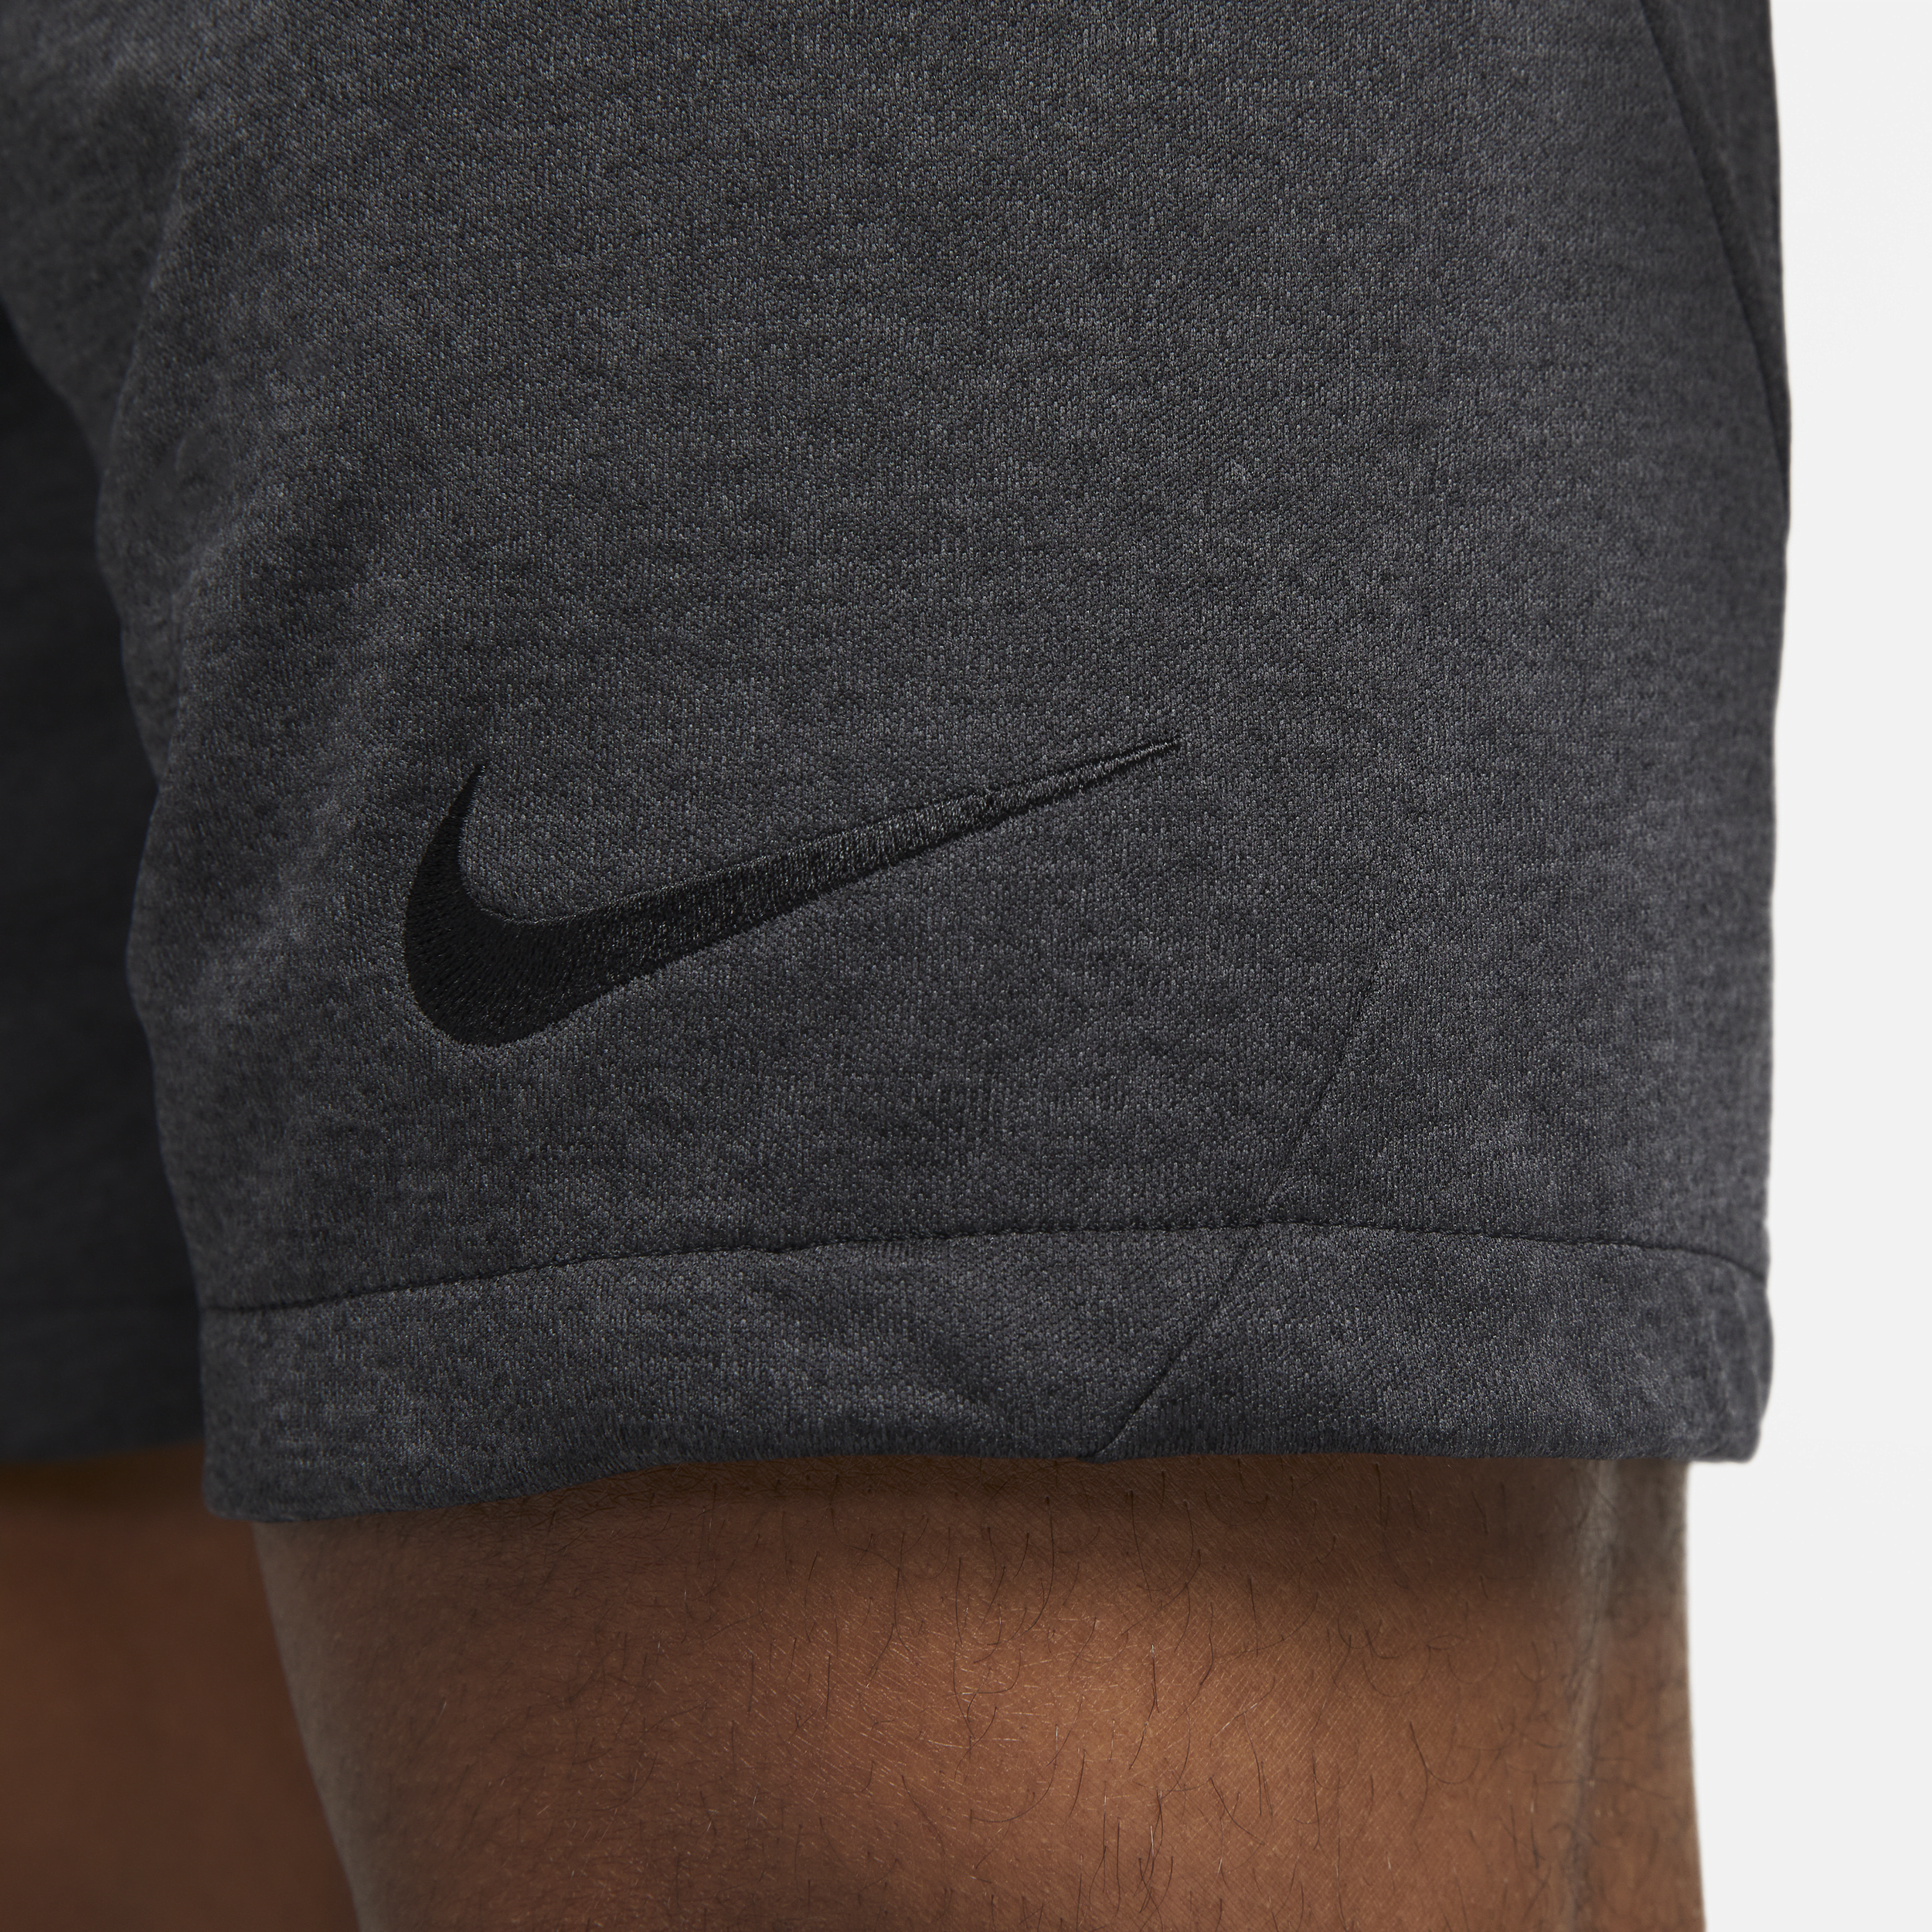 Nike Academy Dri-FIT voetbalshorts voor heren Zwart